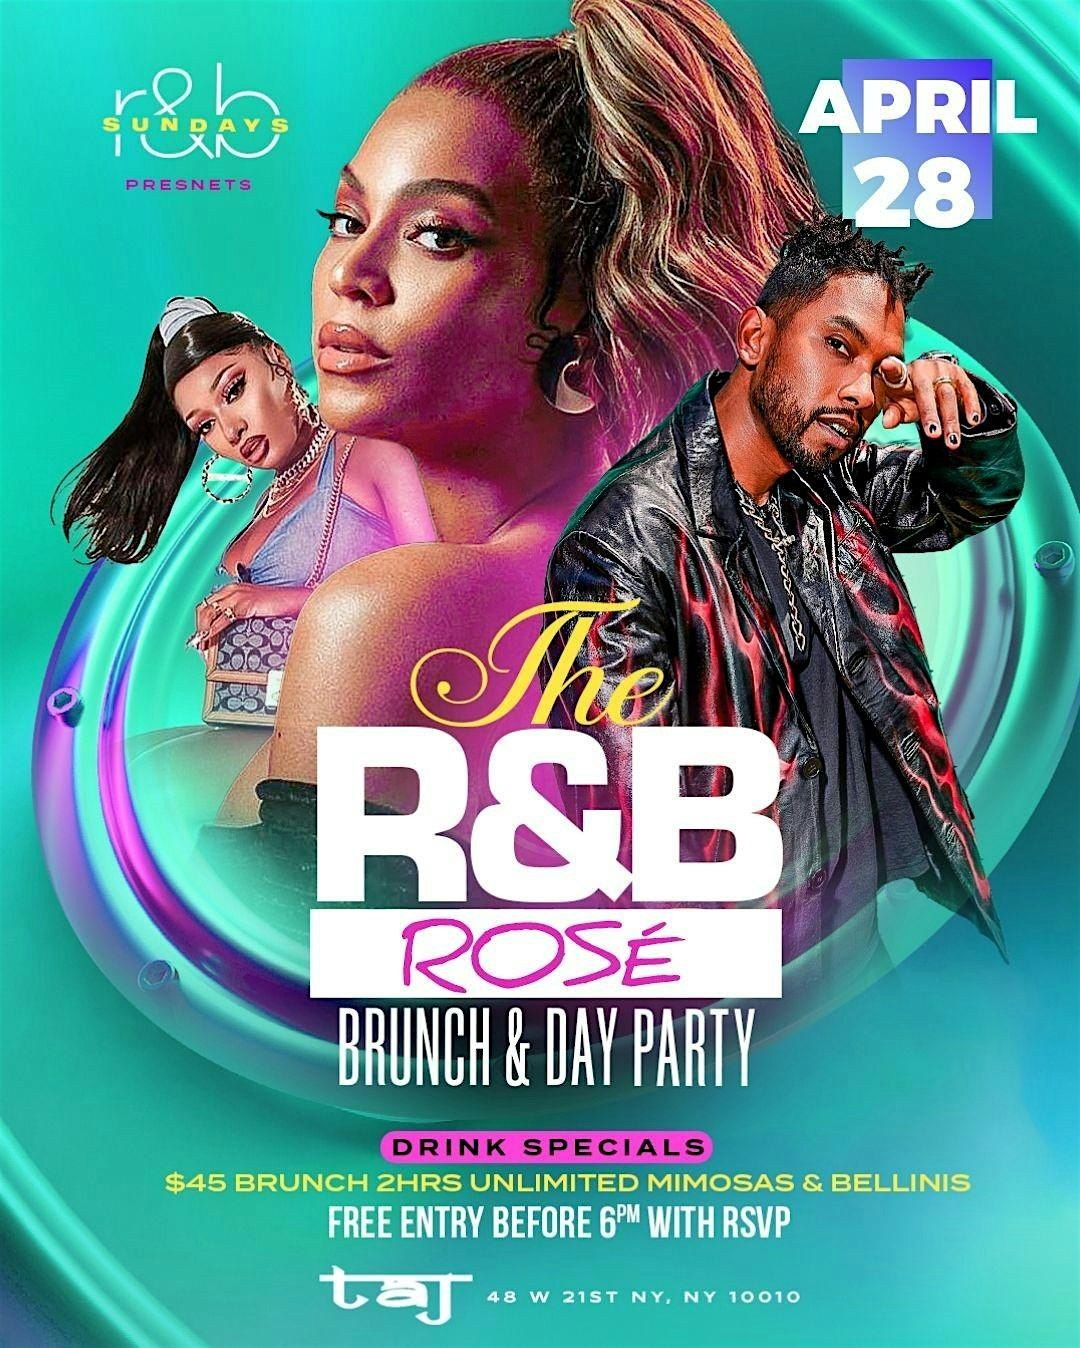 The R&B Rose Brunch